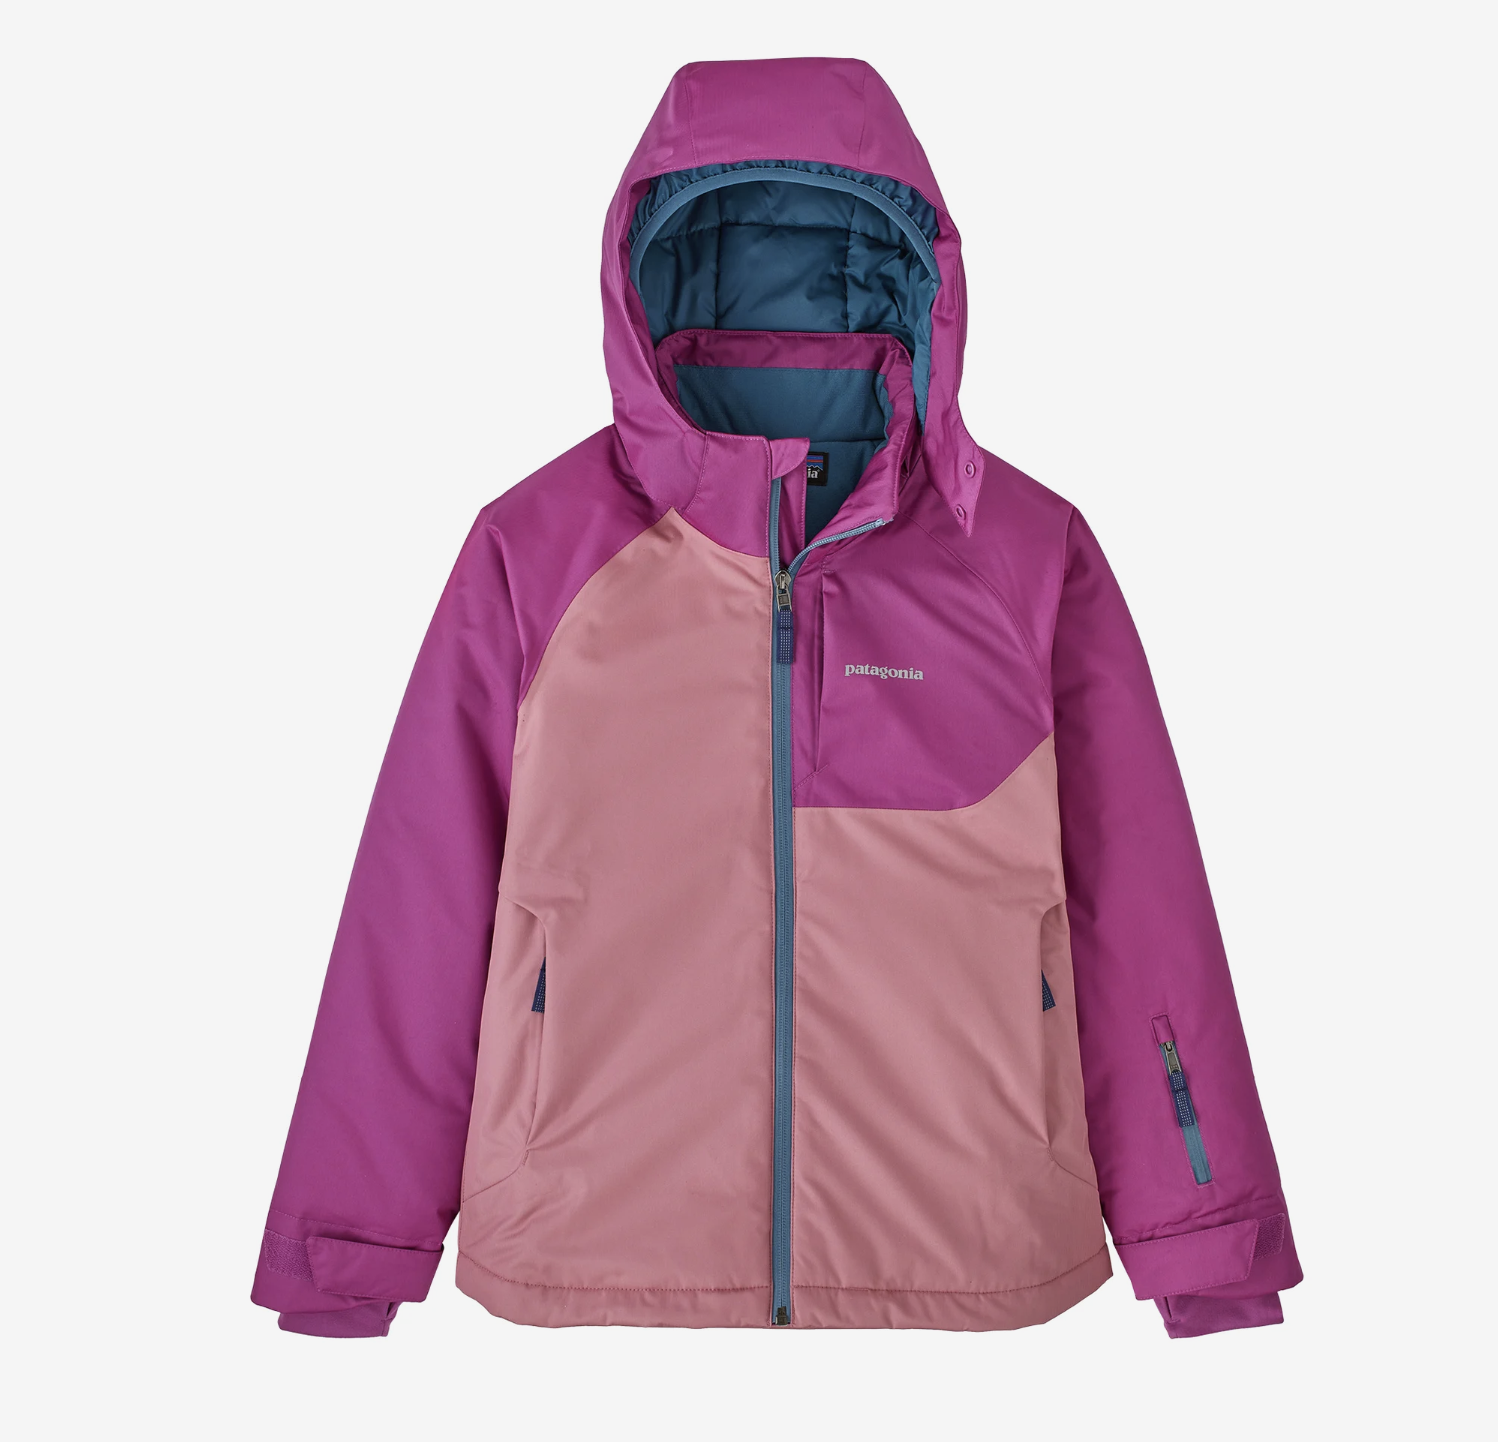 Patagonia Patagonia - Girls snowbelle jacket + pants